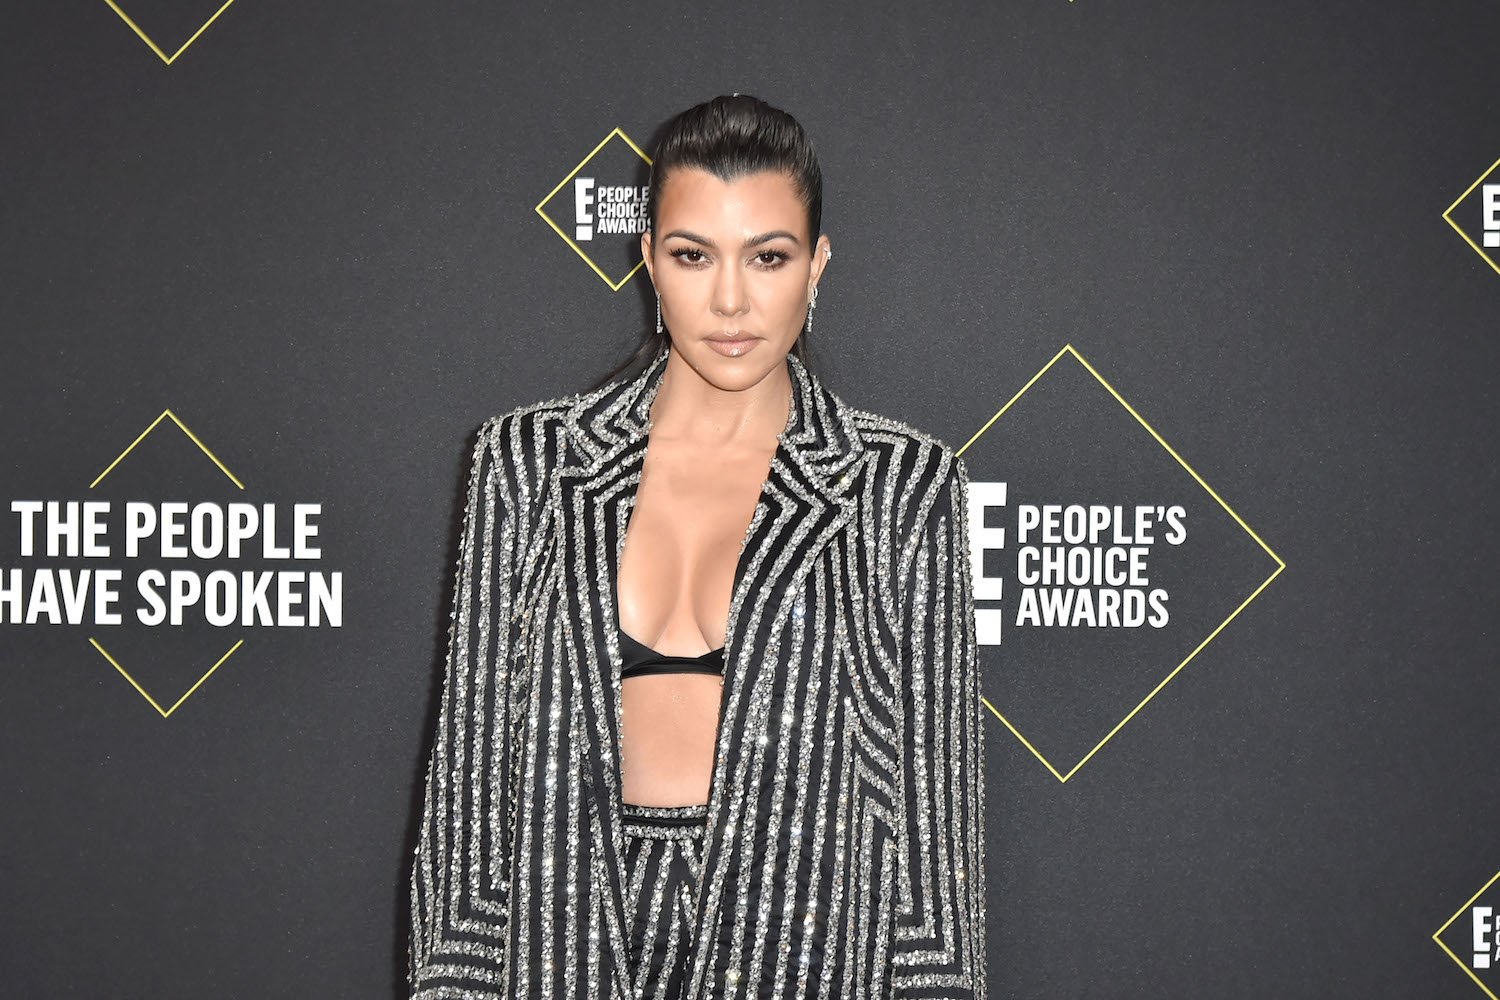 Kourtney Kardashian attends 2019 E! People's Choice Awards